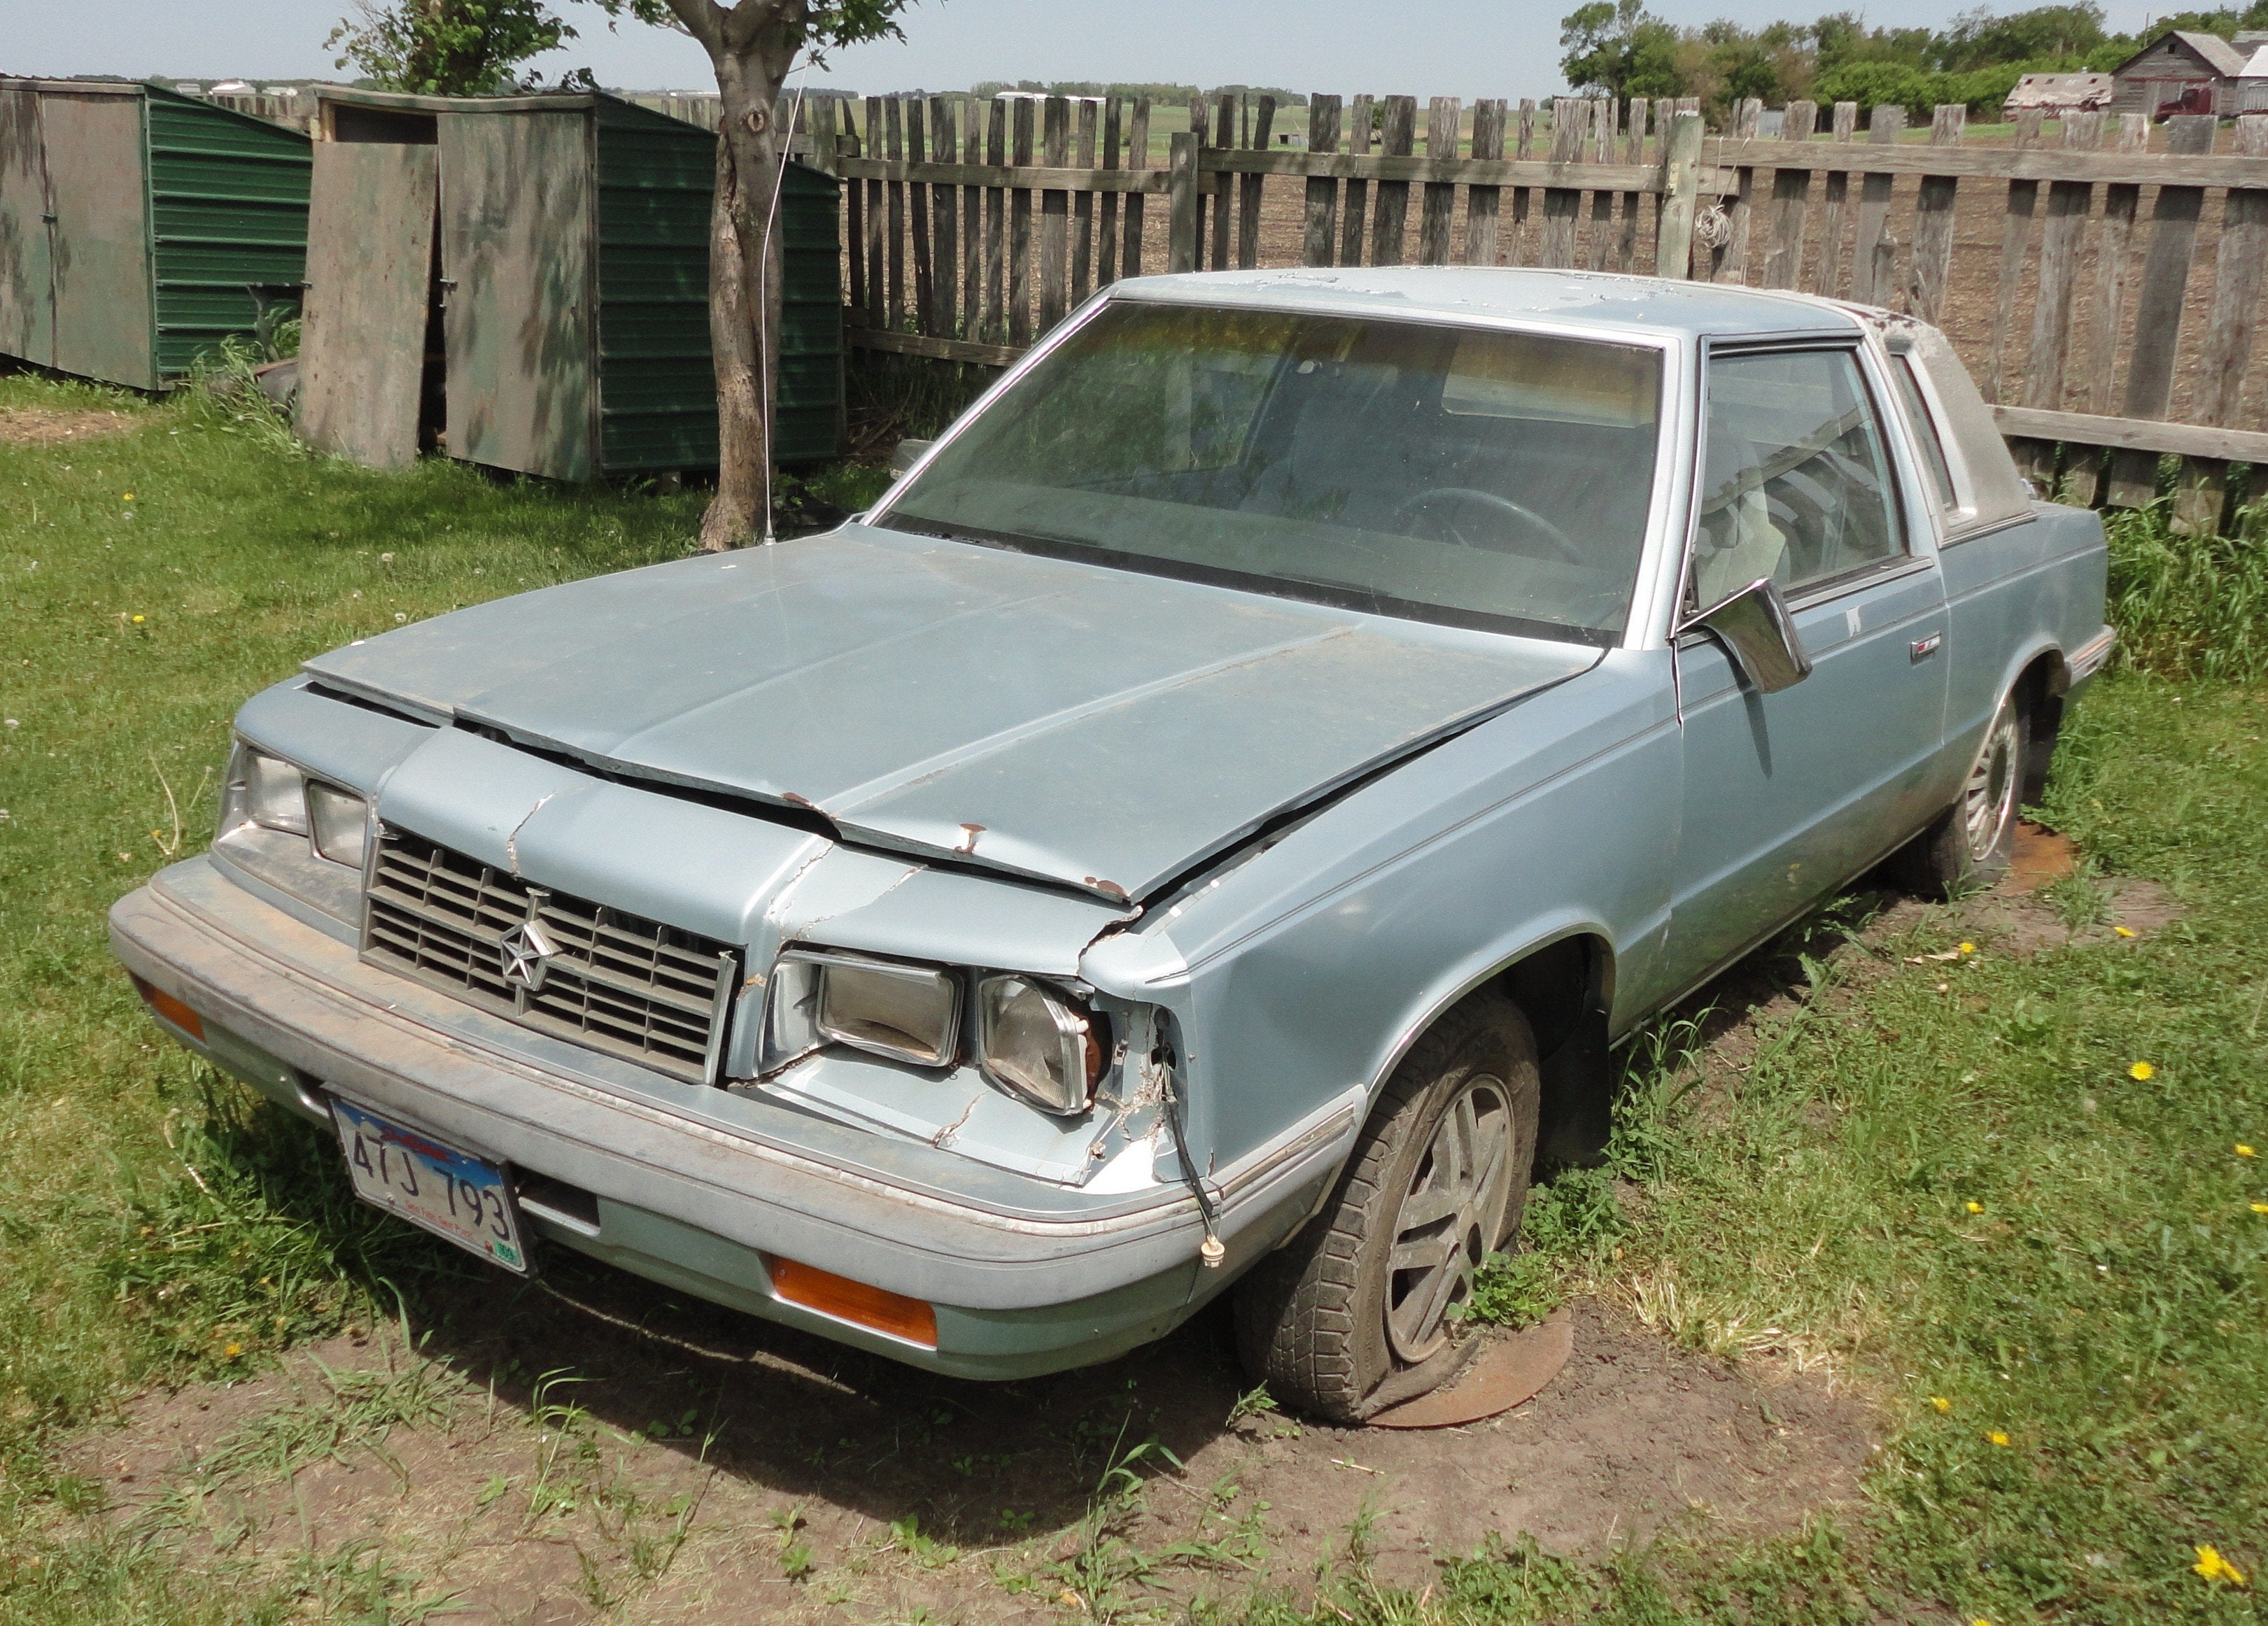 1986 Dodge 600, 2 door, low miles